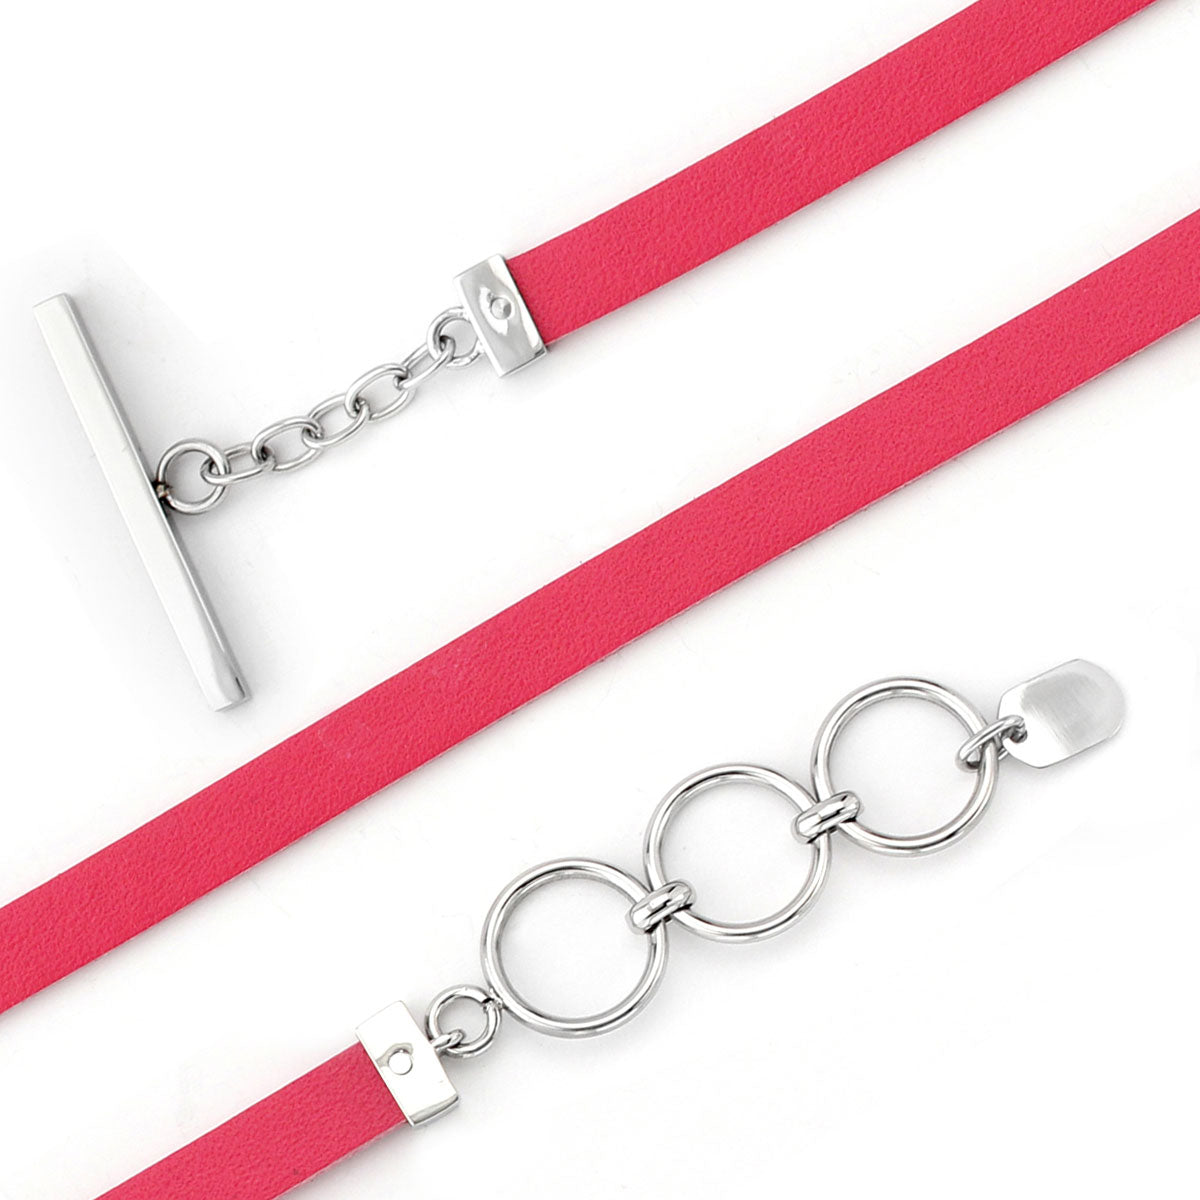 Tickled Pink Leather Bracelet RETIRED ONLY 1 LEFT!-340094